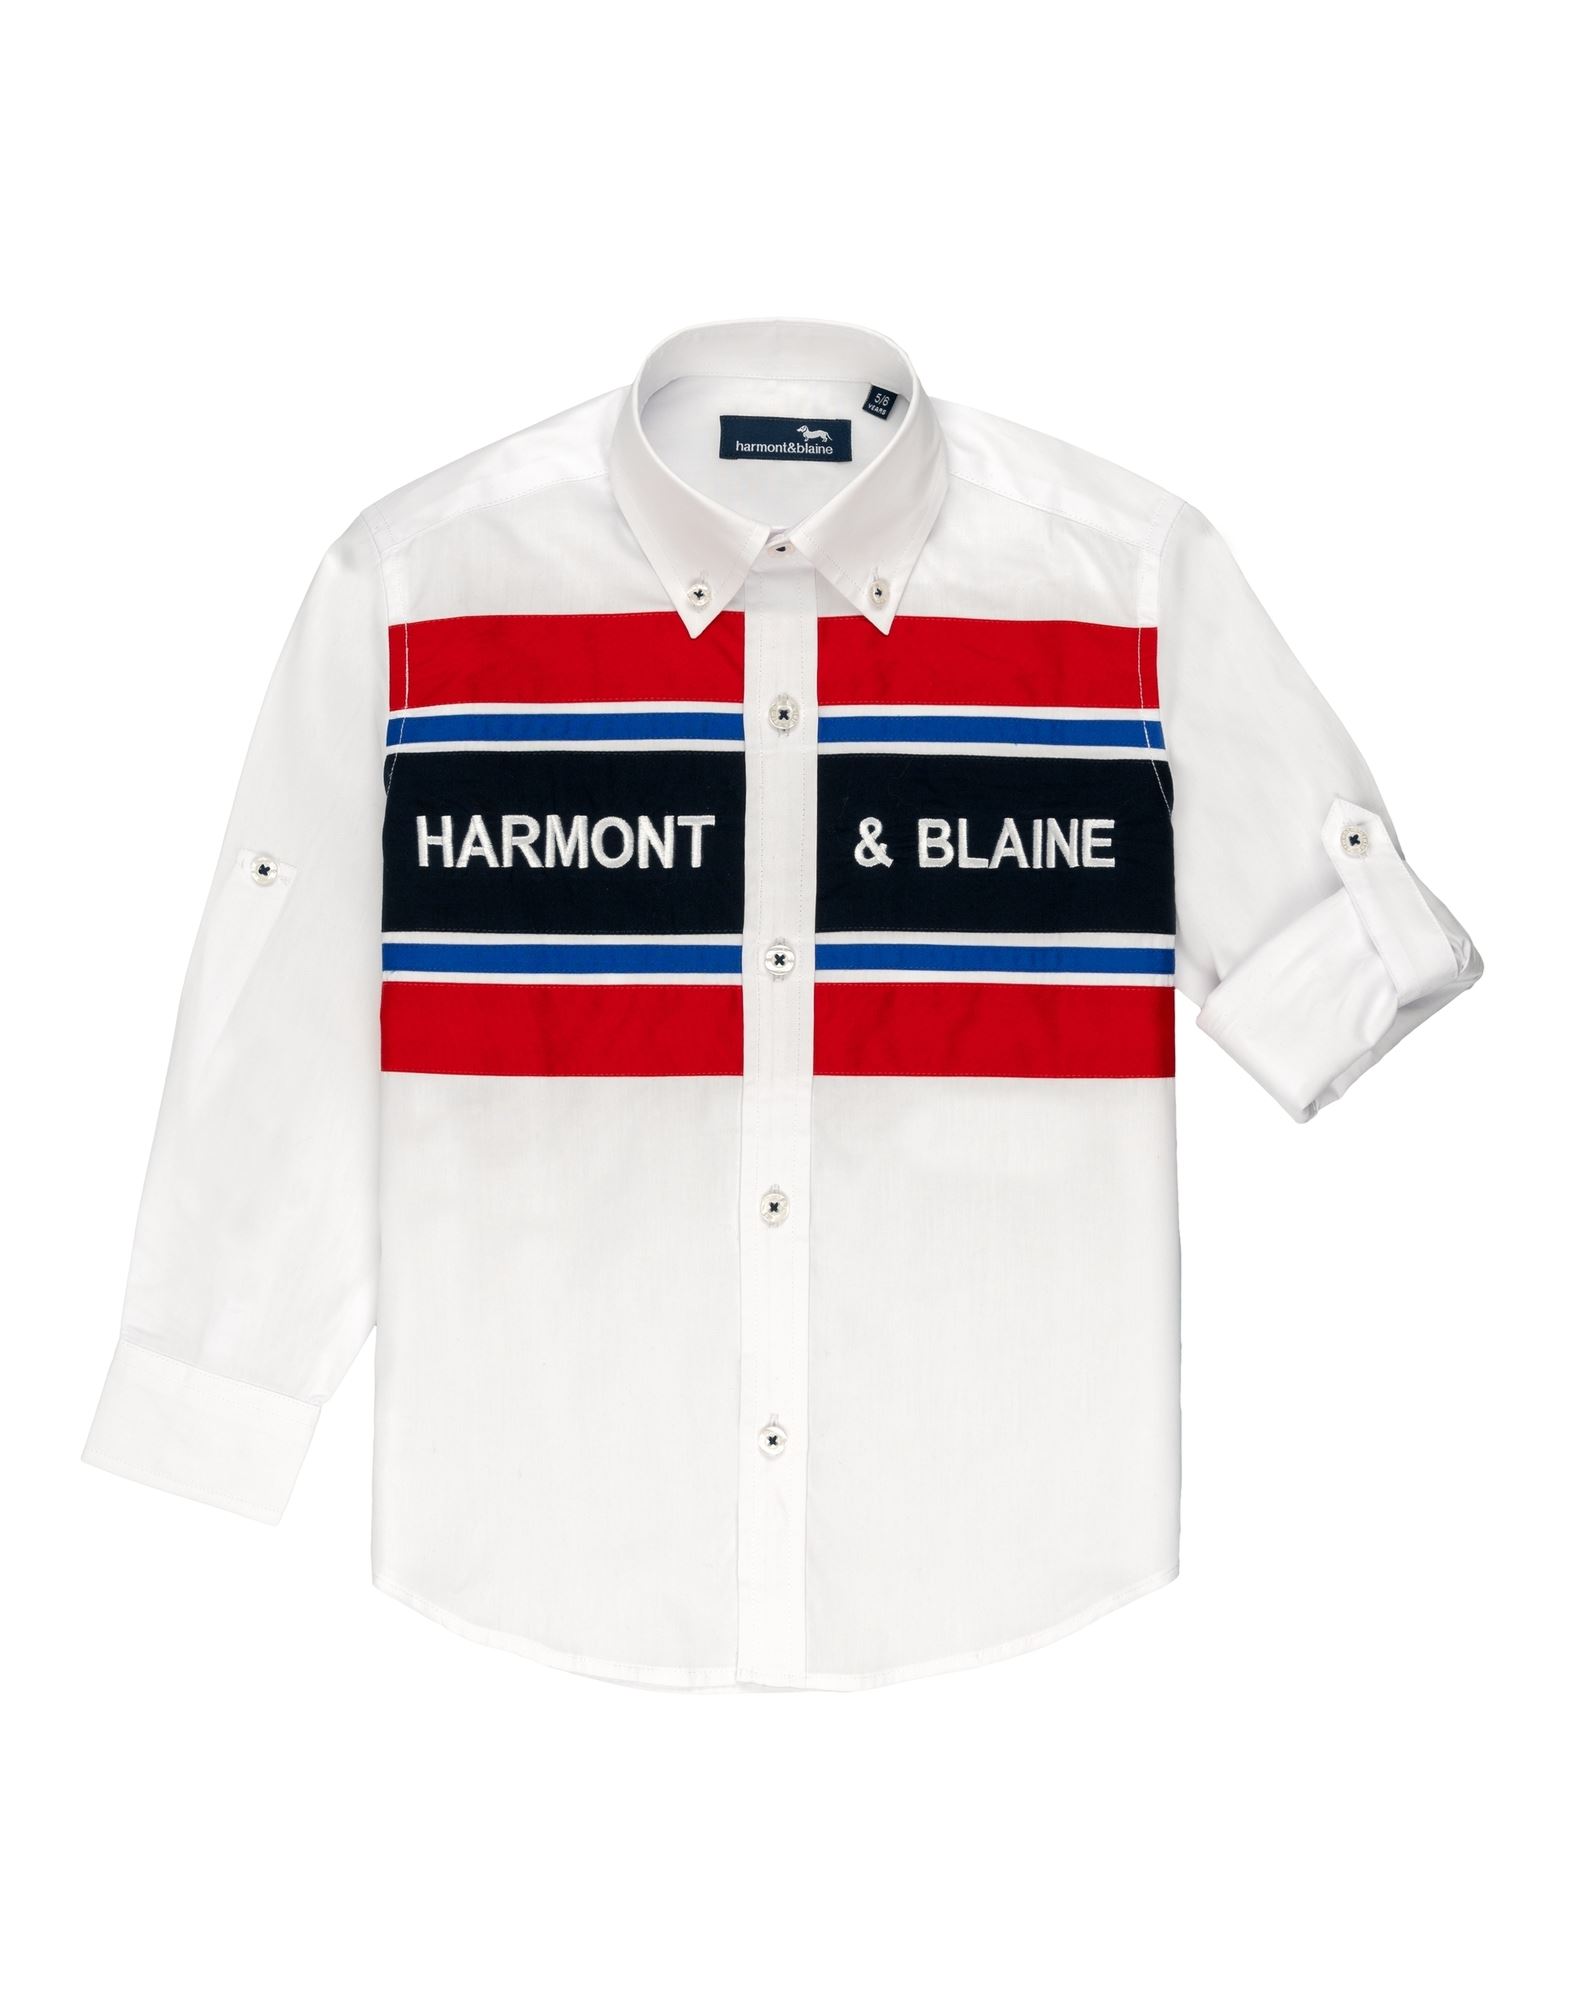 HARMONT & BLAINE Hemd Kinder Weiß von HARMONT & BLAINE